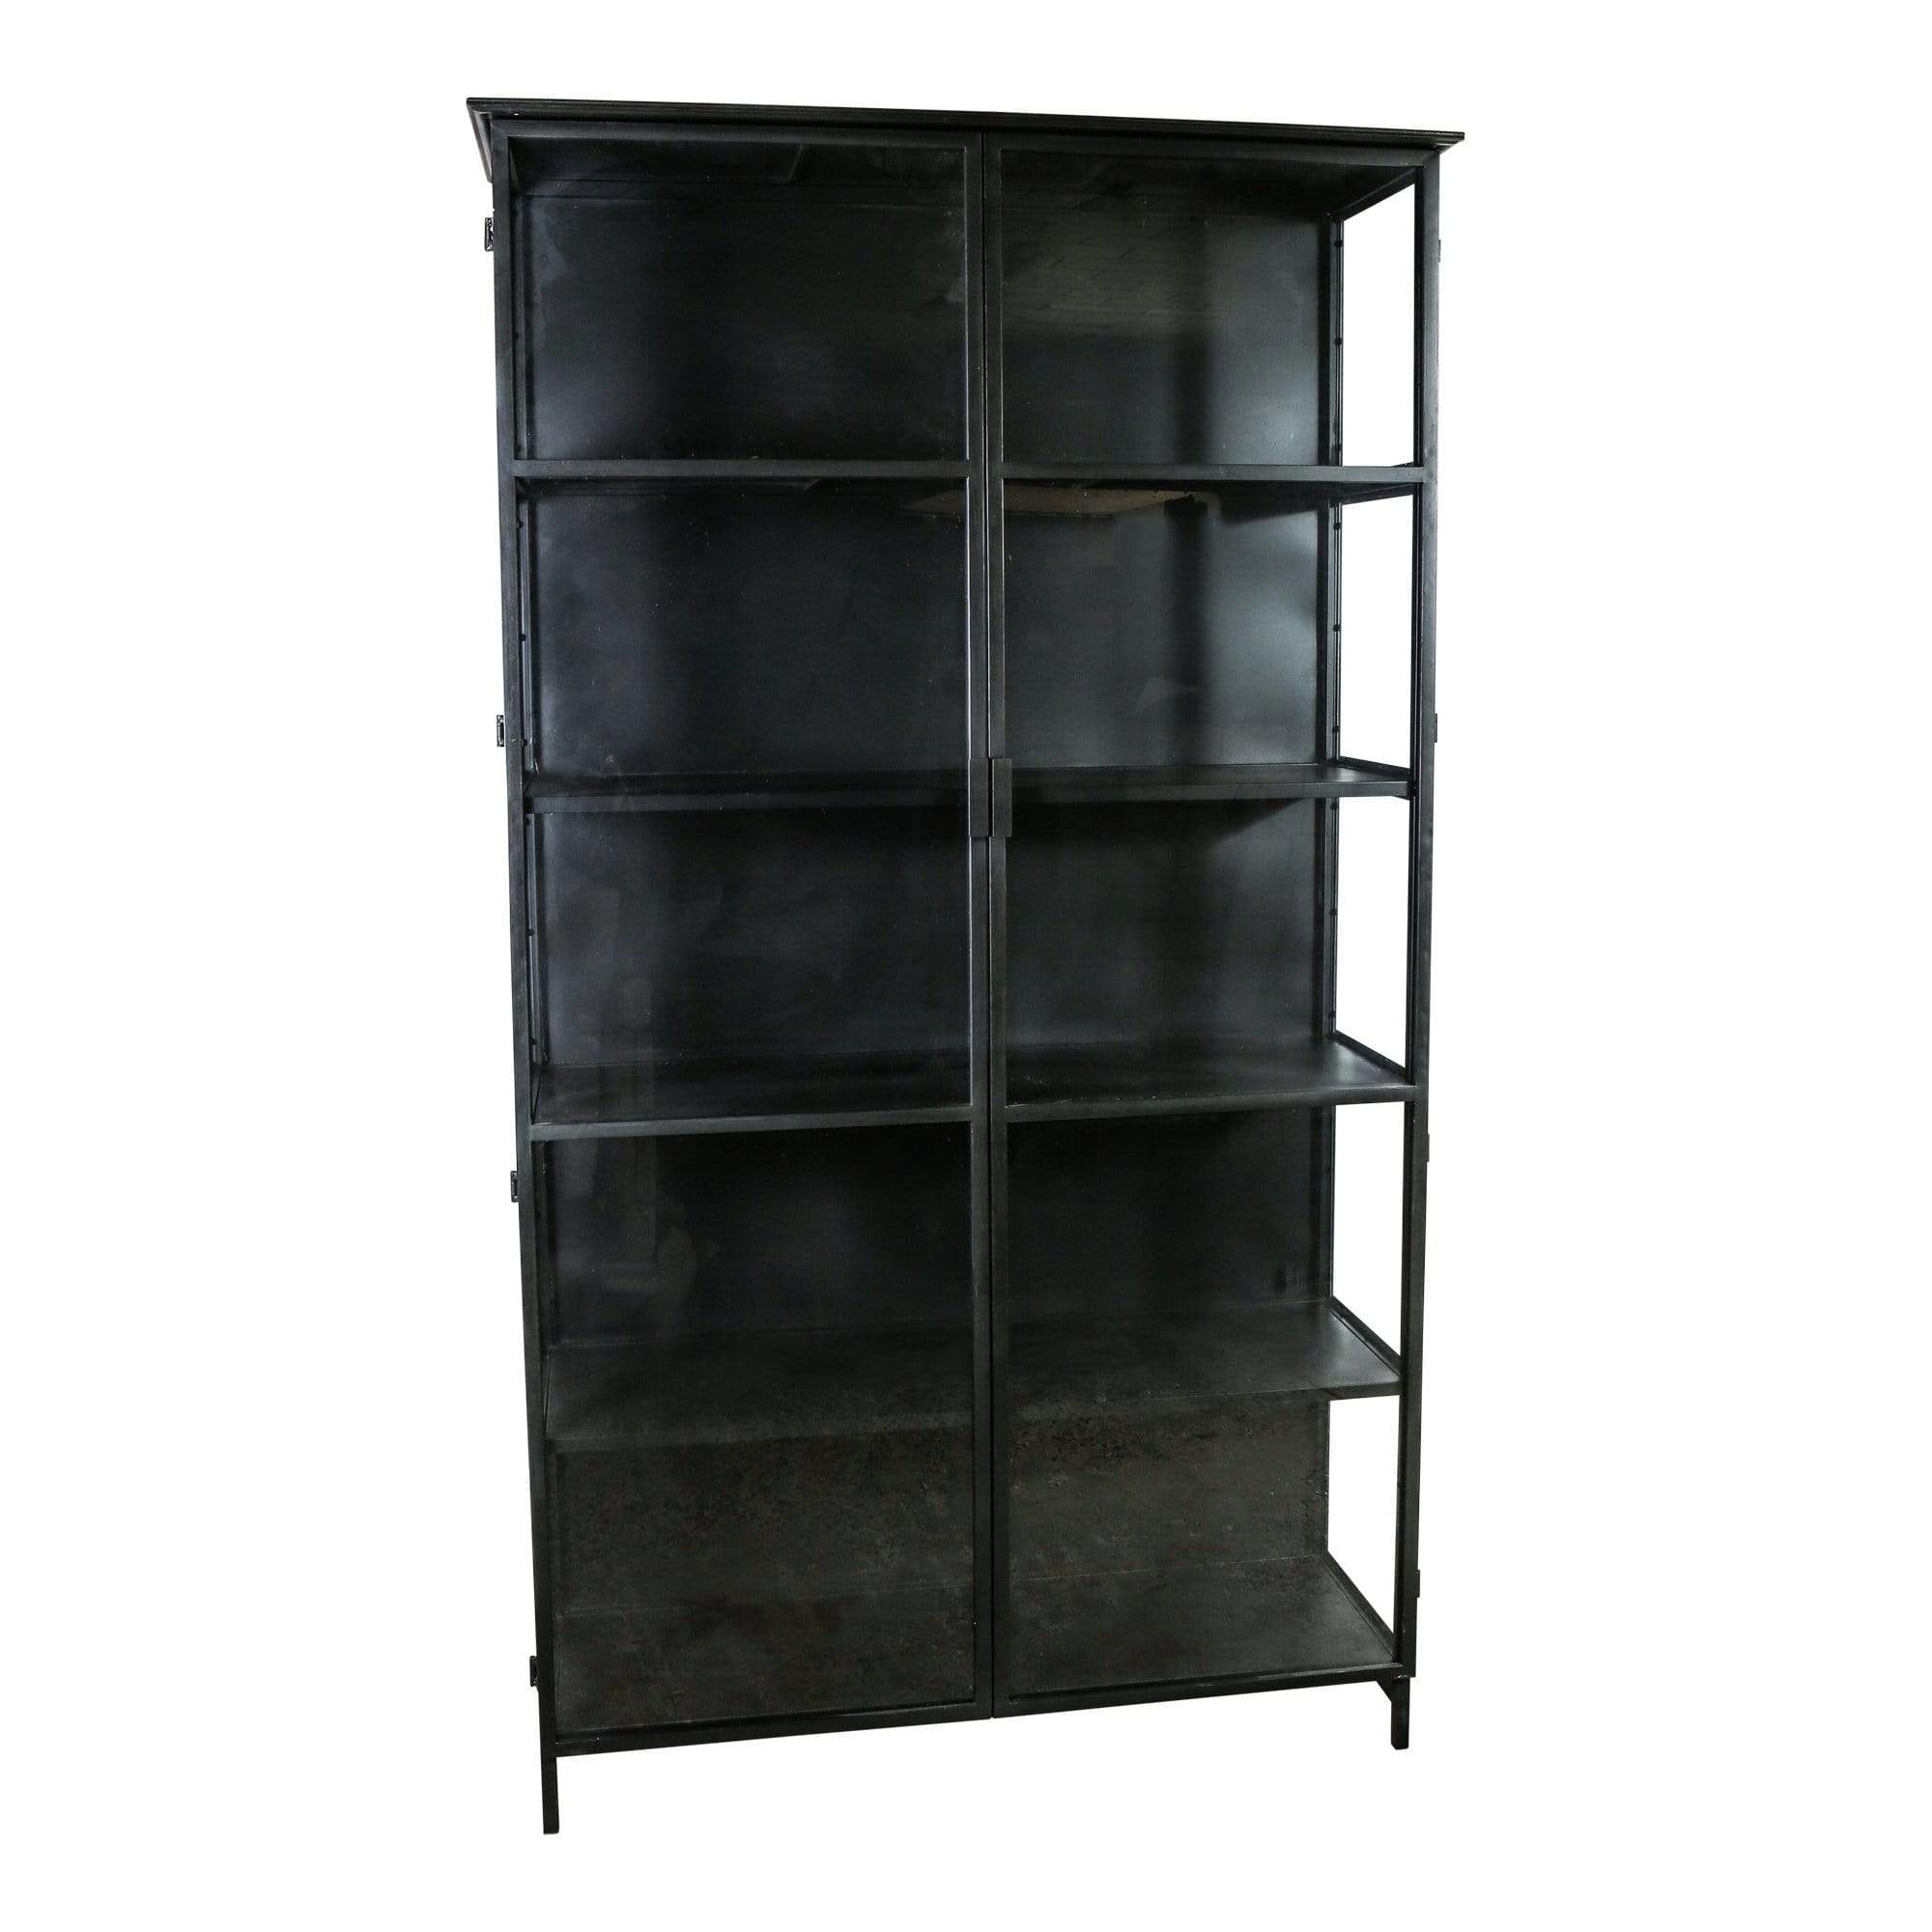 Elina Glass cabinet black Iron frame 2 doors Gratis Bezorgen - online bestellen bij Potz Wonen